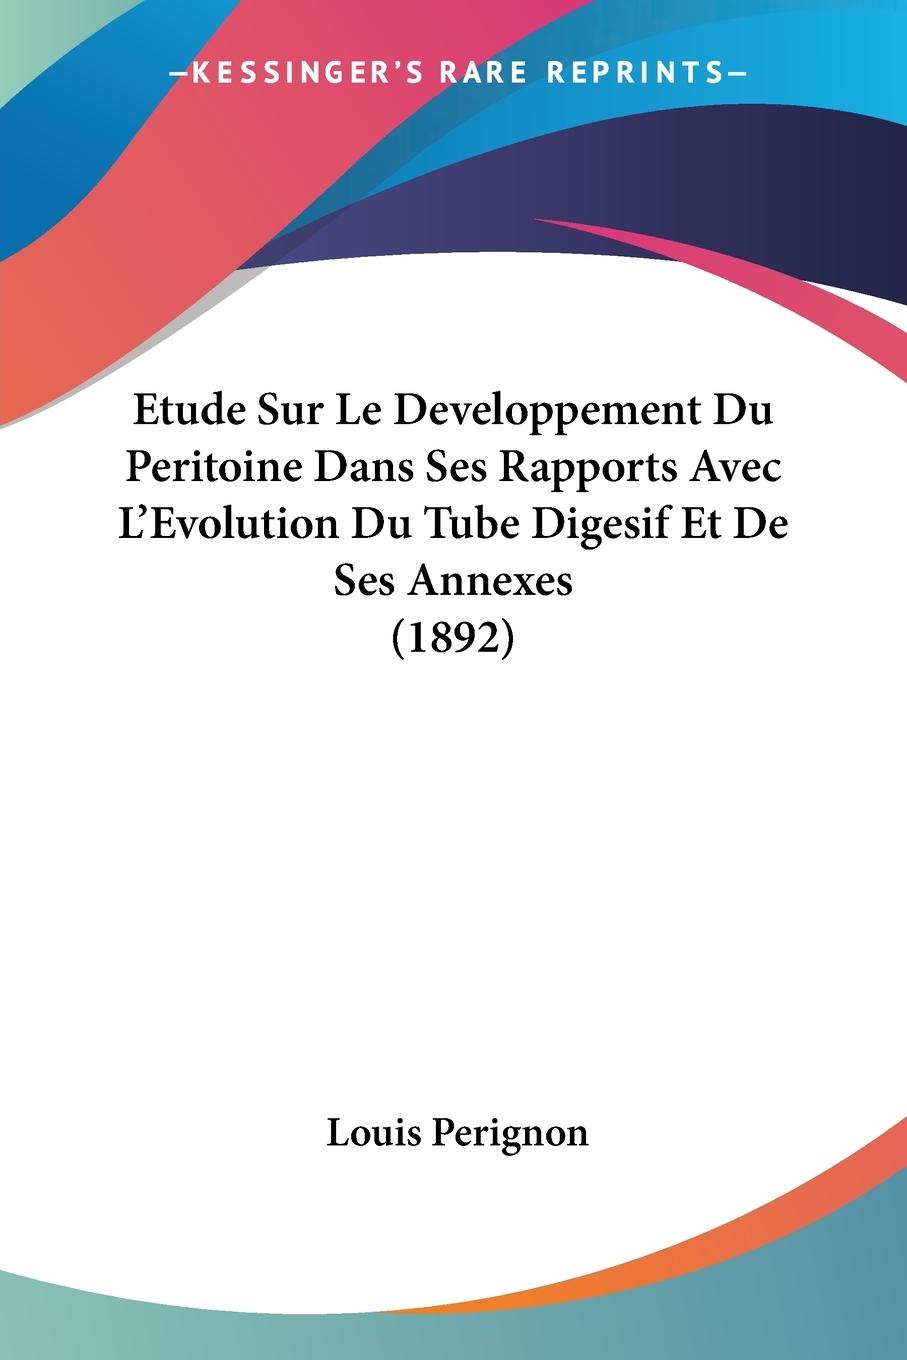 Etude Sur Le Developpement Du Peritoine Dans Ses Rapports Avec L Evolution Du Tube Digesif Et De Ses Annexes (1892) - Perignon, Louis